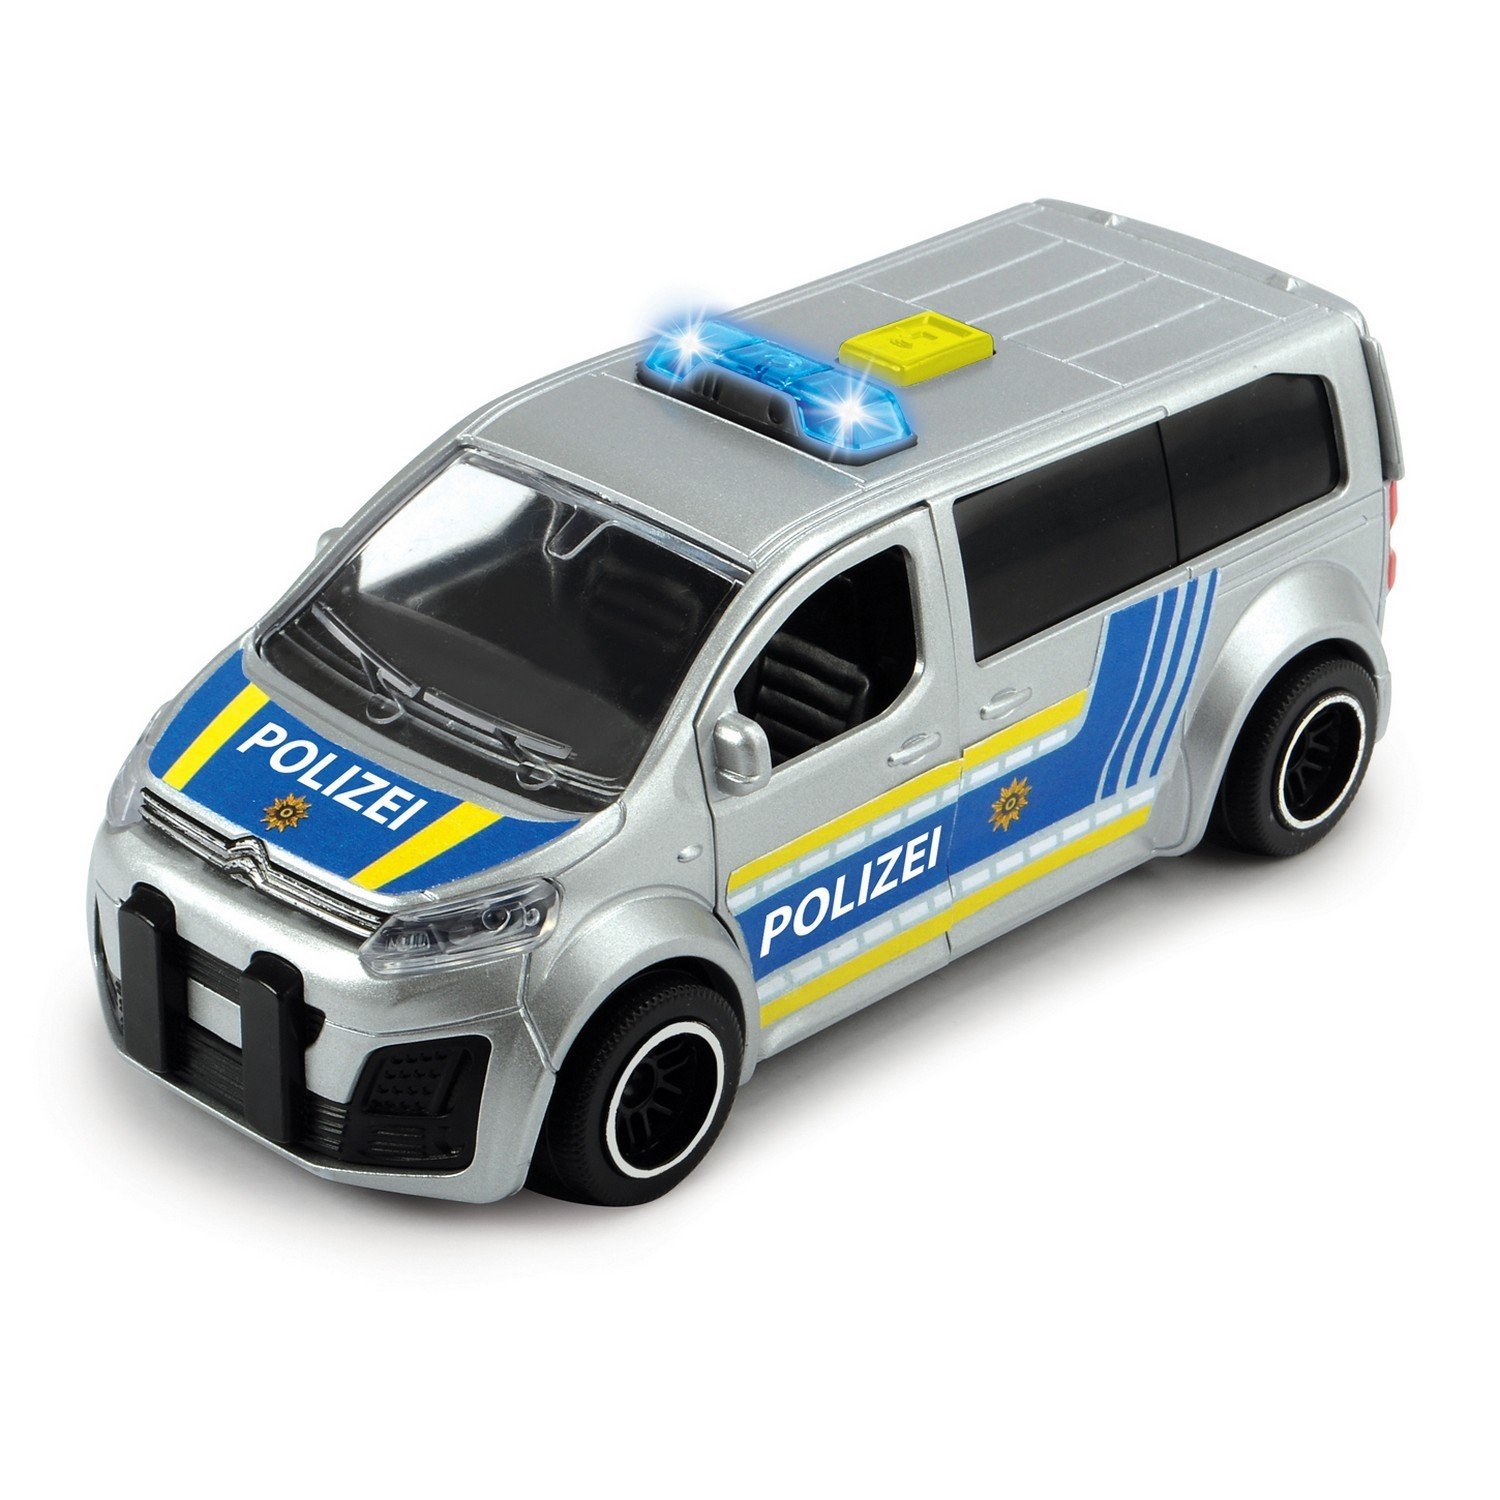 Фрикционный полицейский минивэн - Citroën SpaceTourer с радаром, 15 см, масштаб 1:32, свет, звук  